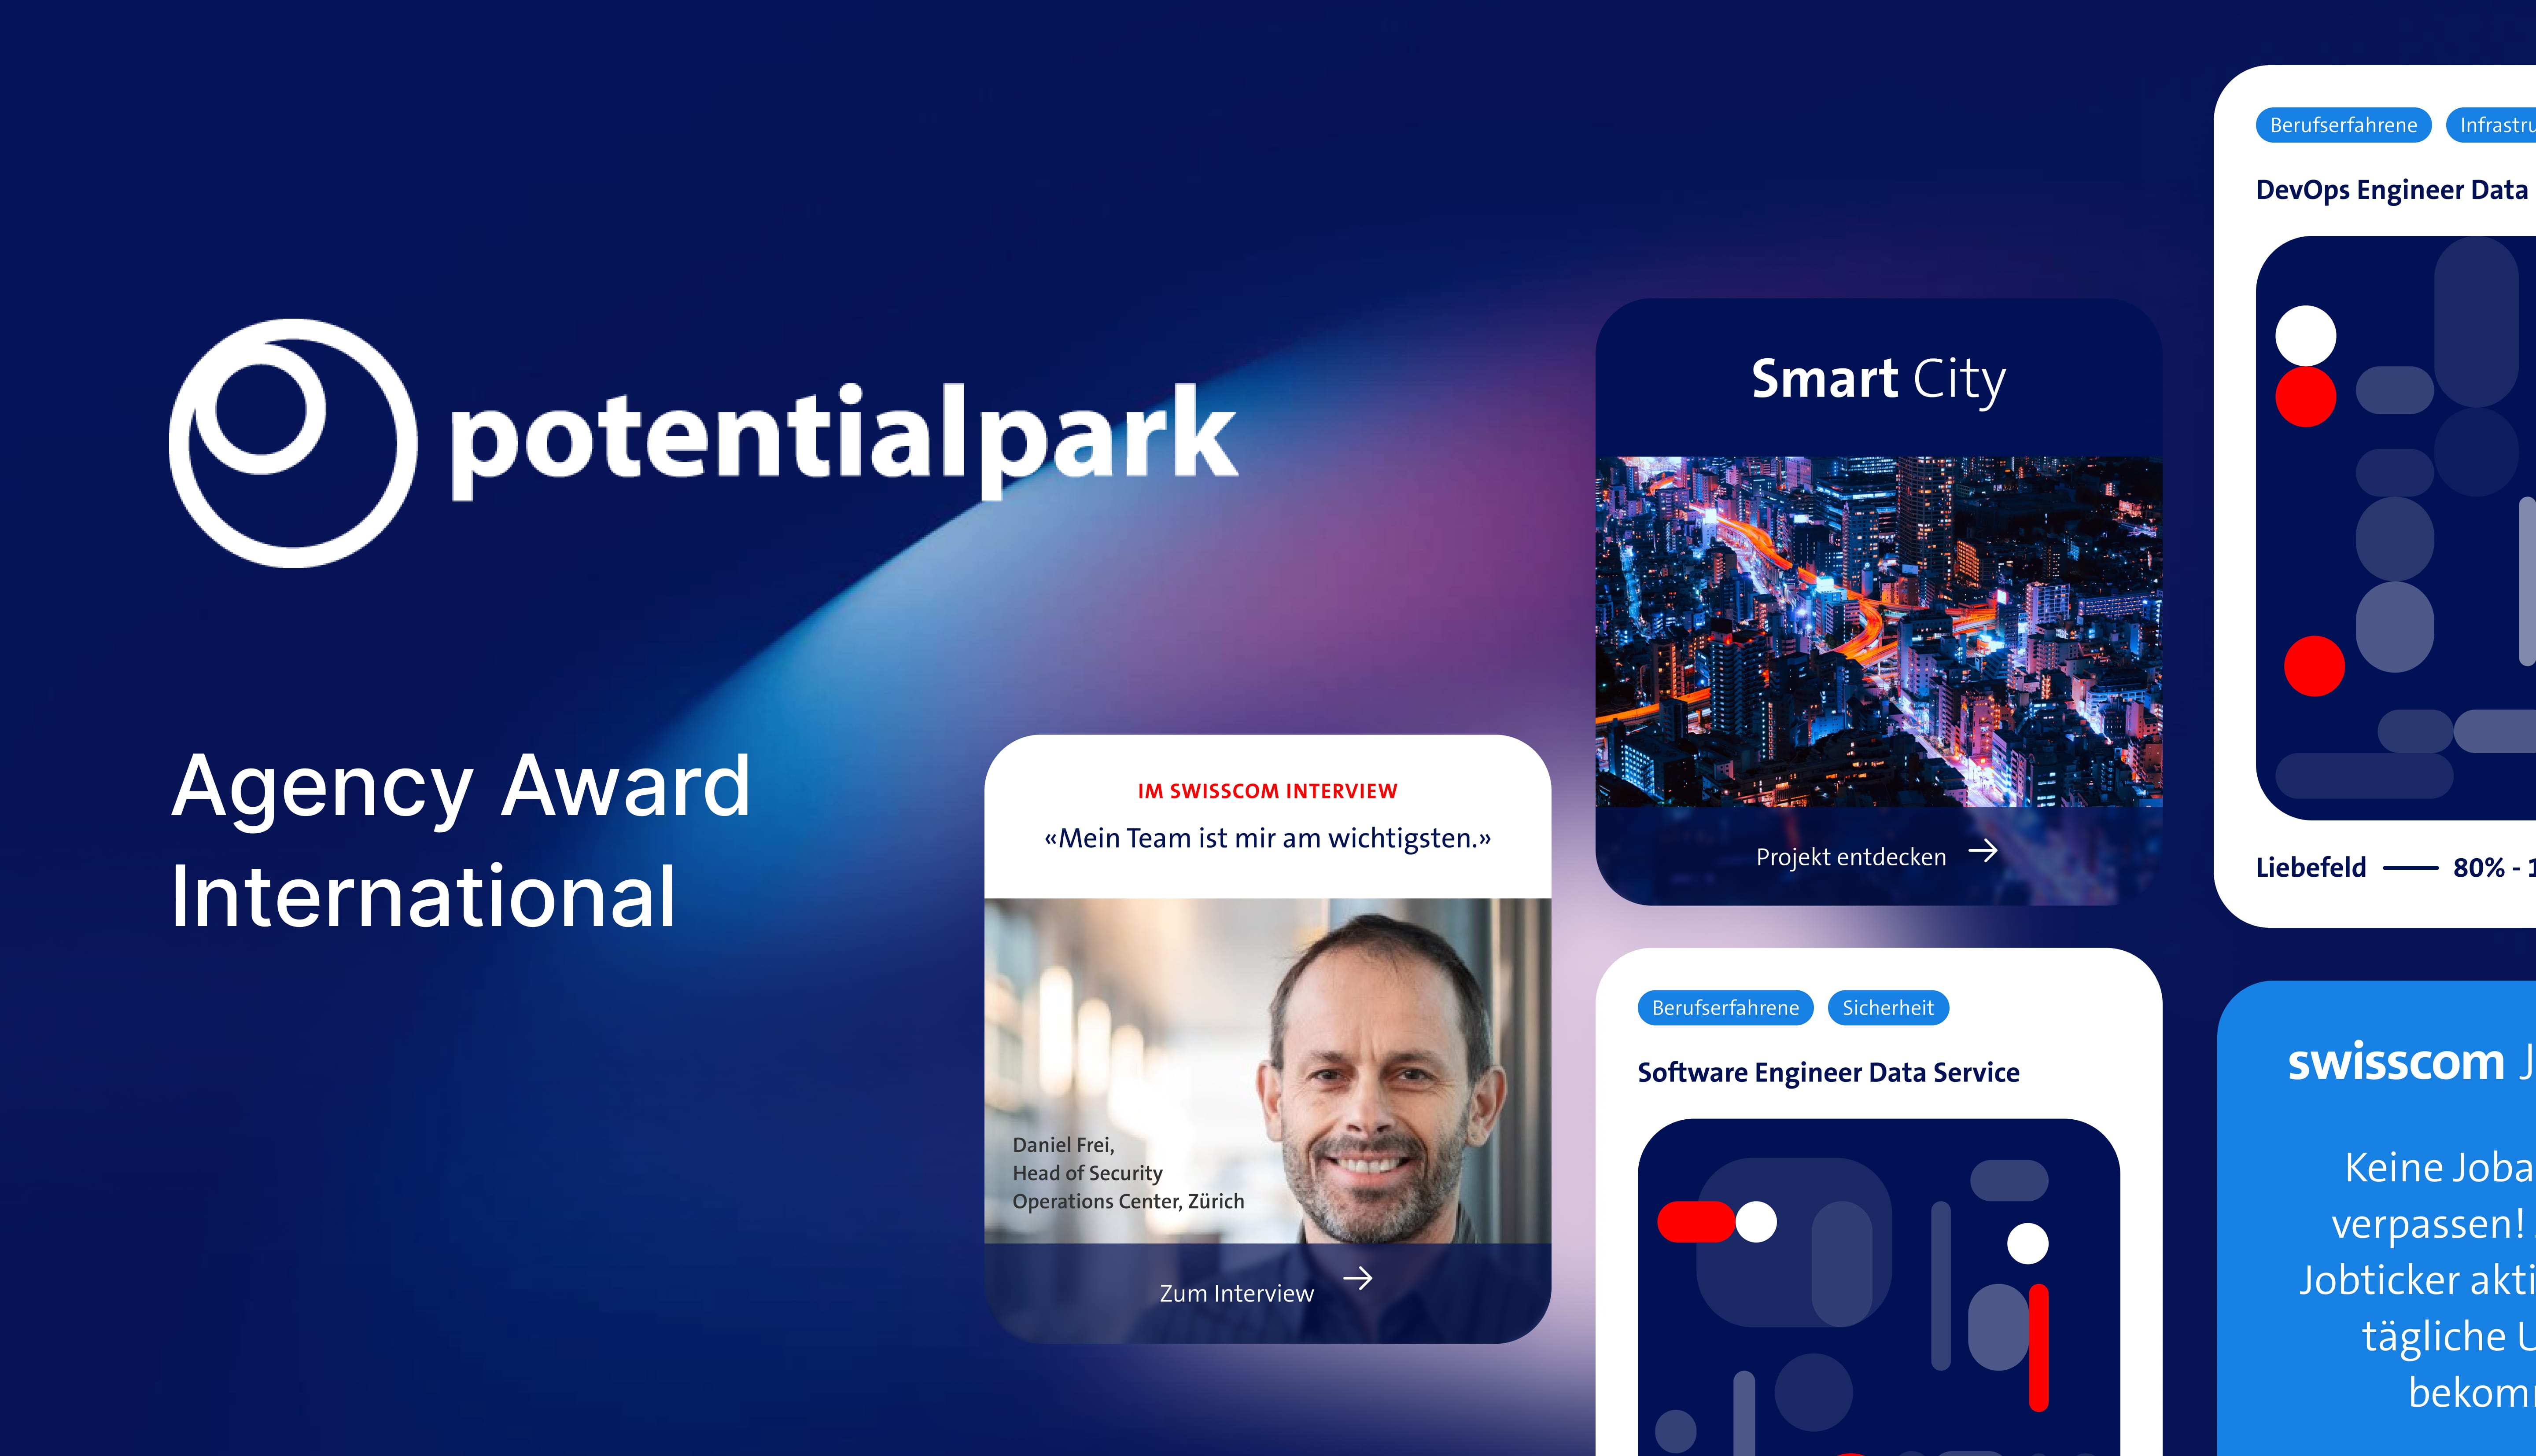 Swisscom revolutionazing career portals